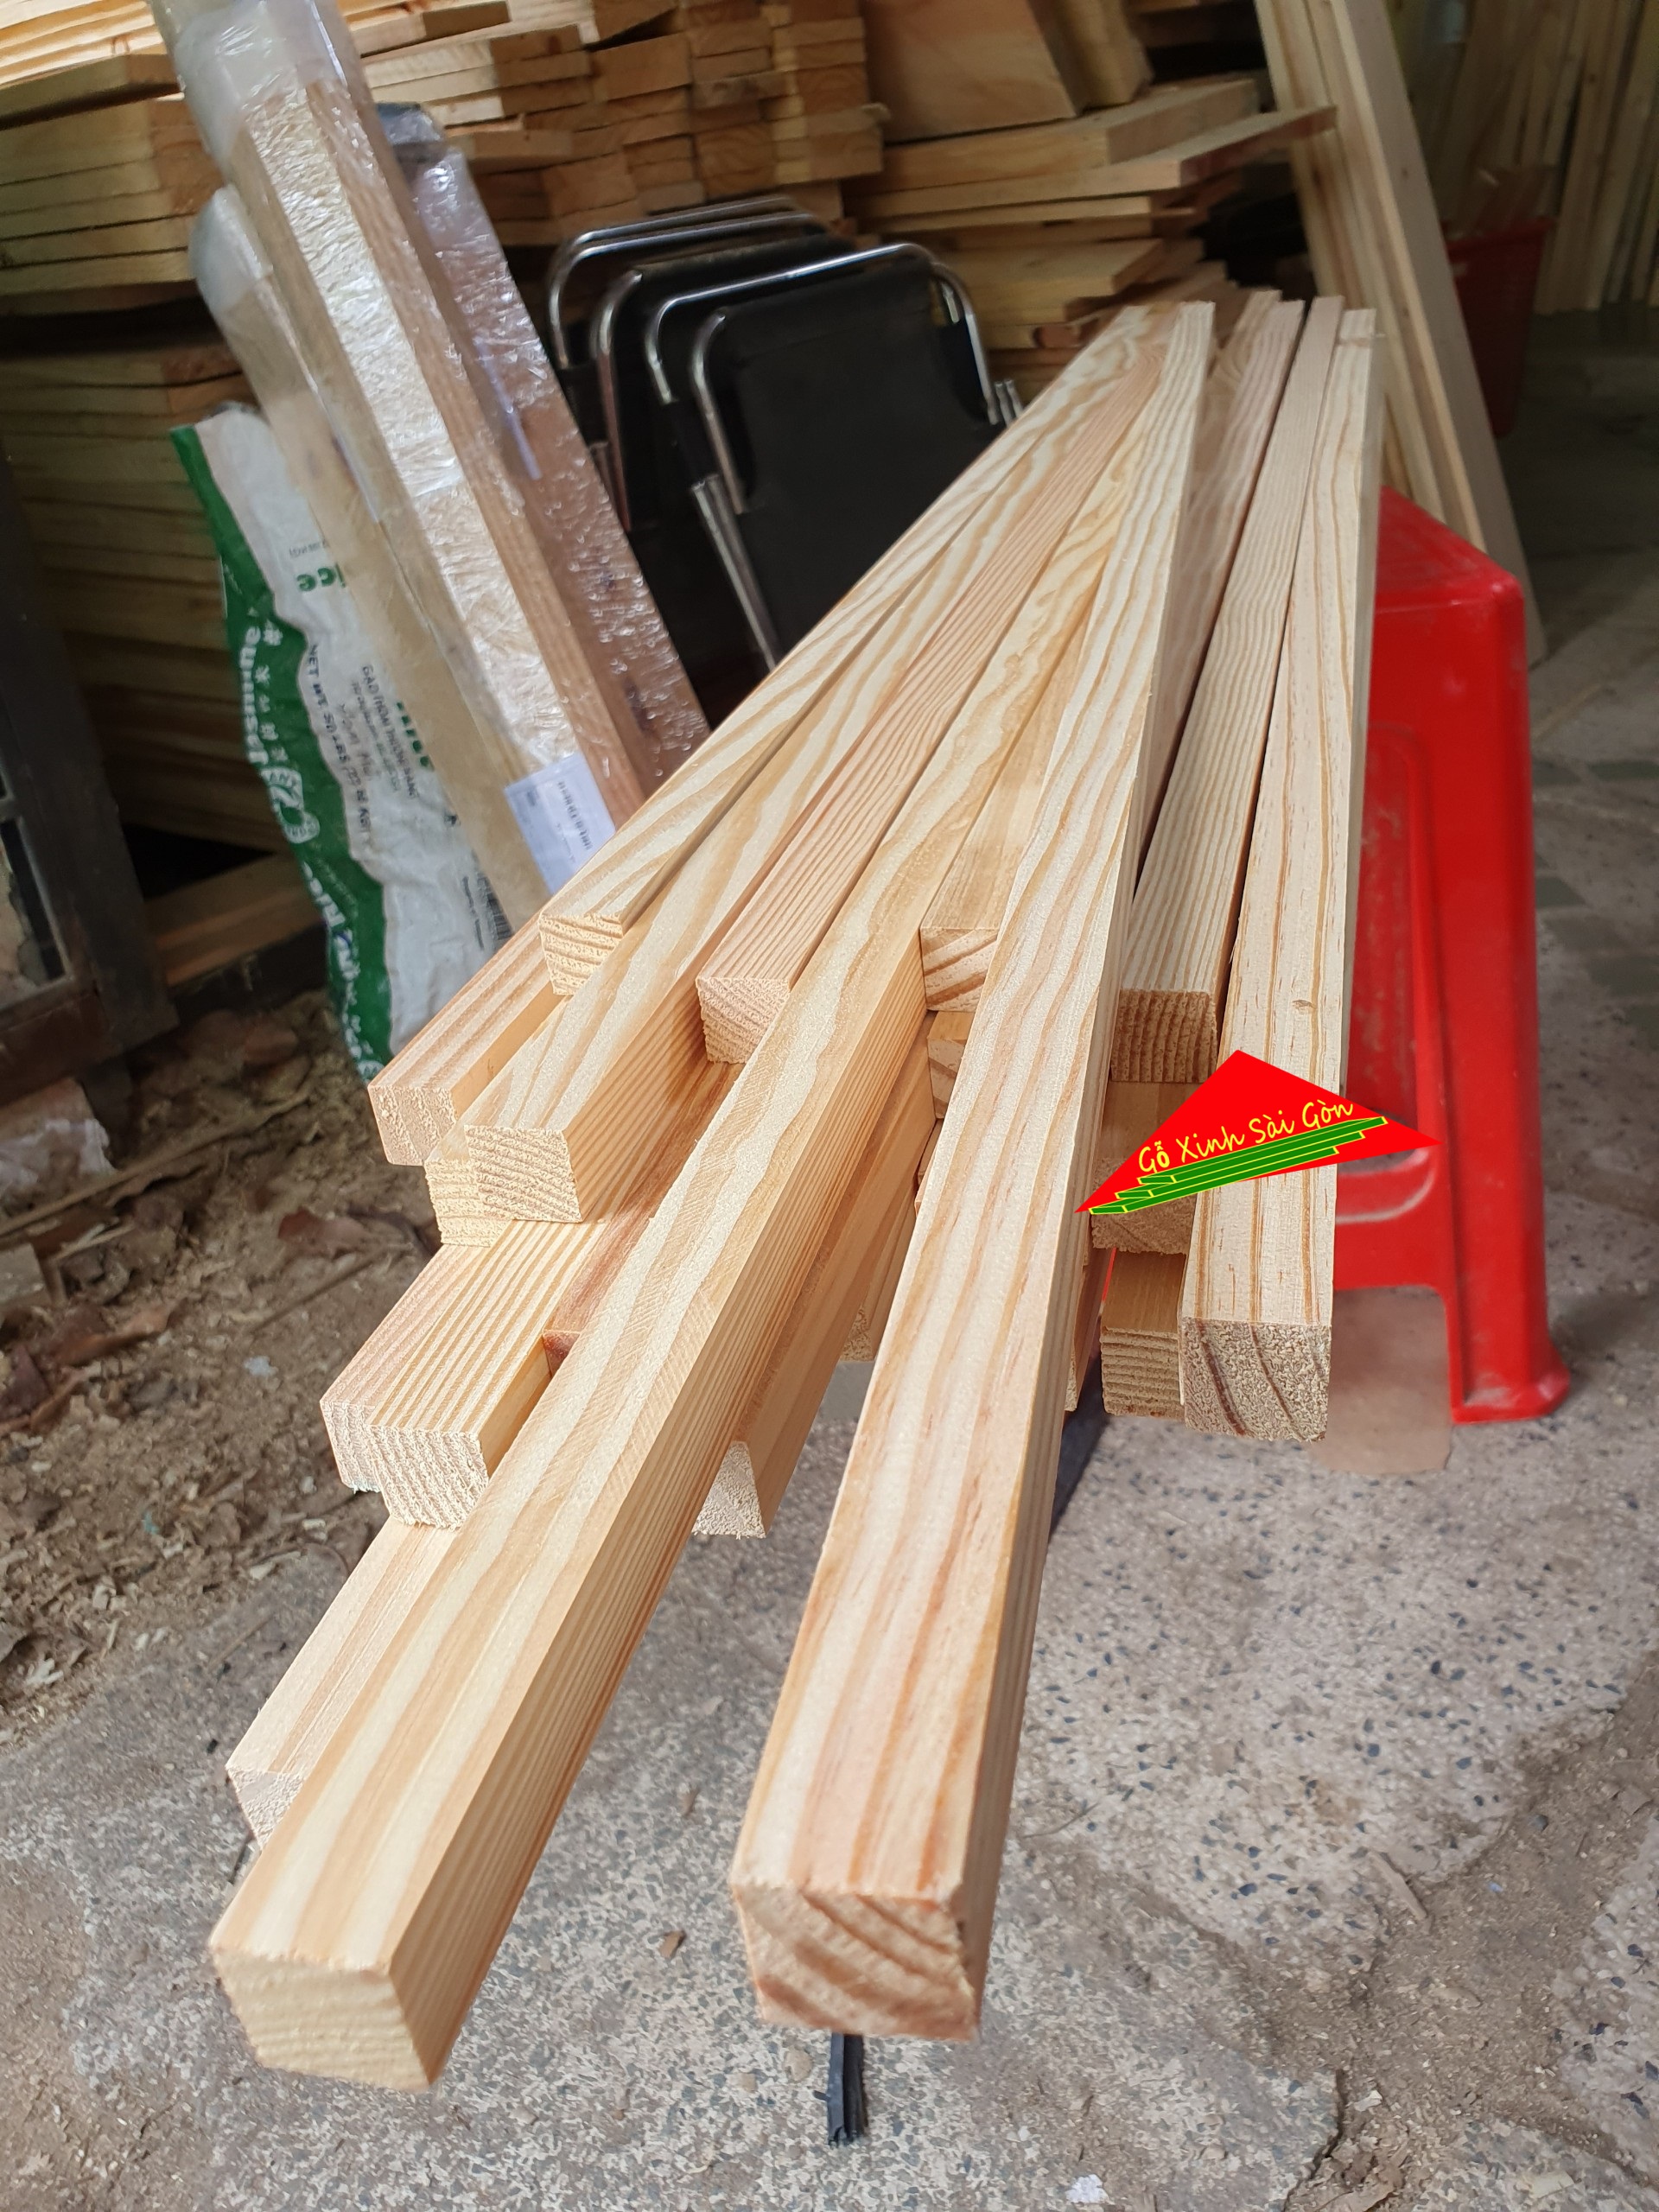 Thanh gỗ thông vuông 2cm ,dài 1m2 đã bào láng 4 mặt thích hợp dùng làm nẹp chỉ, đóng chuồng...